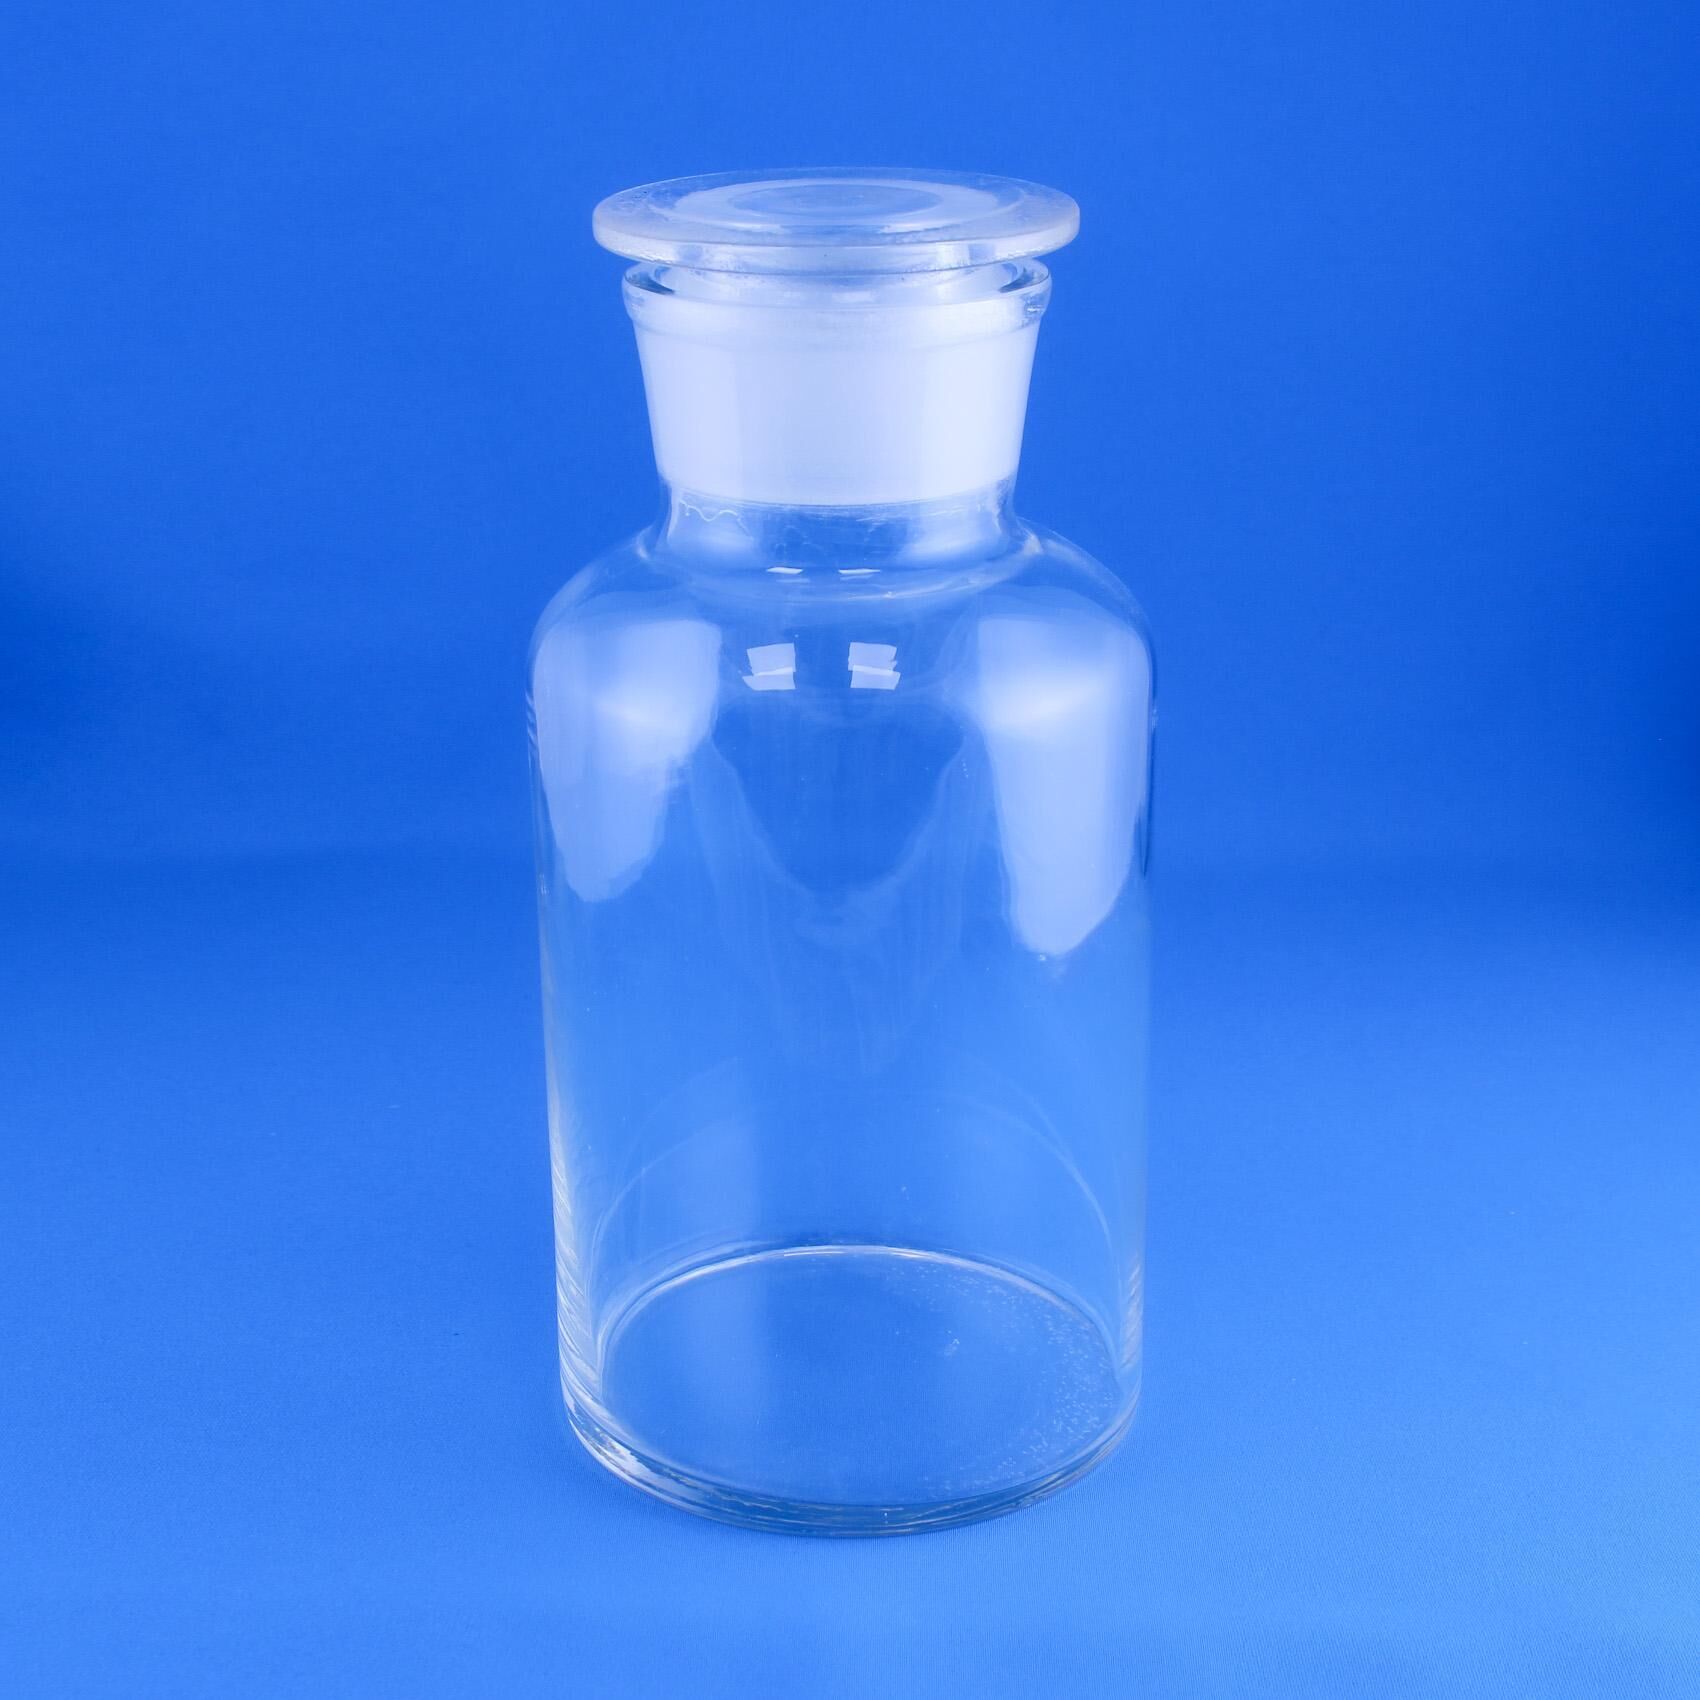 Склянка (штанглас) 5drops светлое стекло, с притёртой пробкой 2500 мл, широкое горло